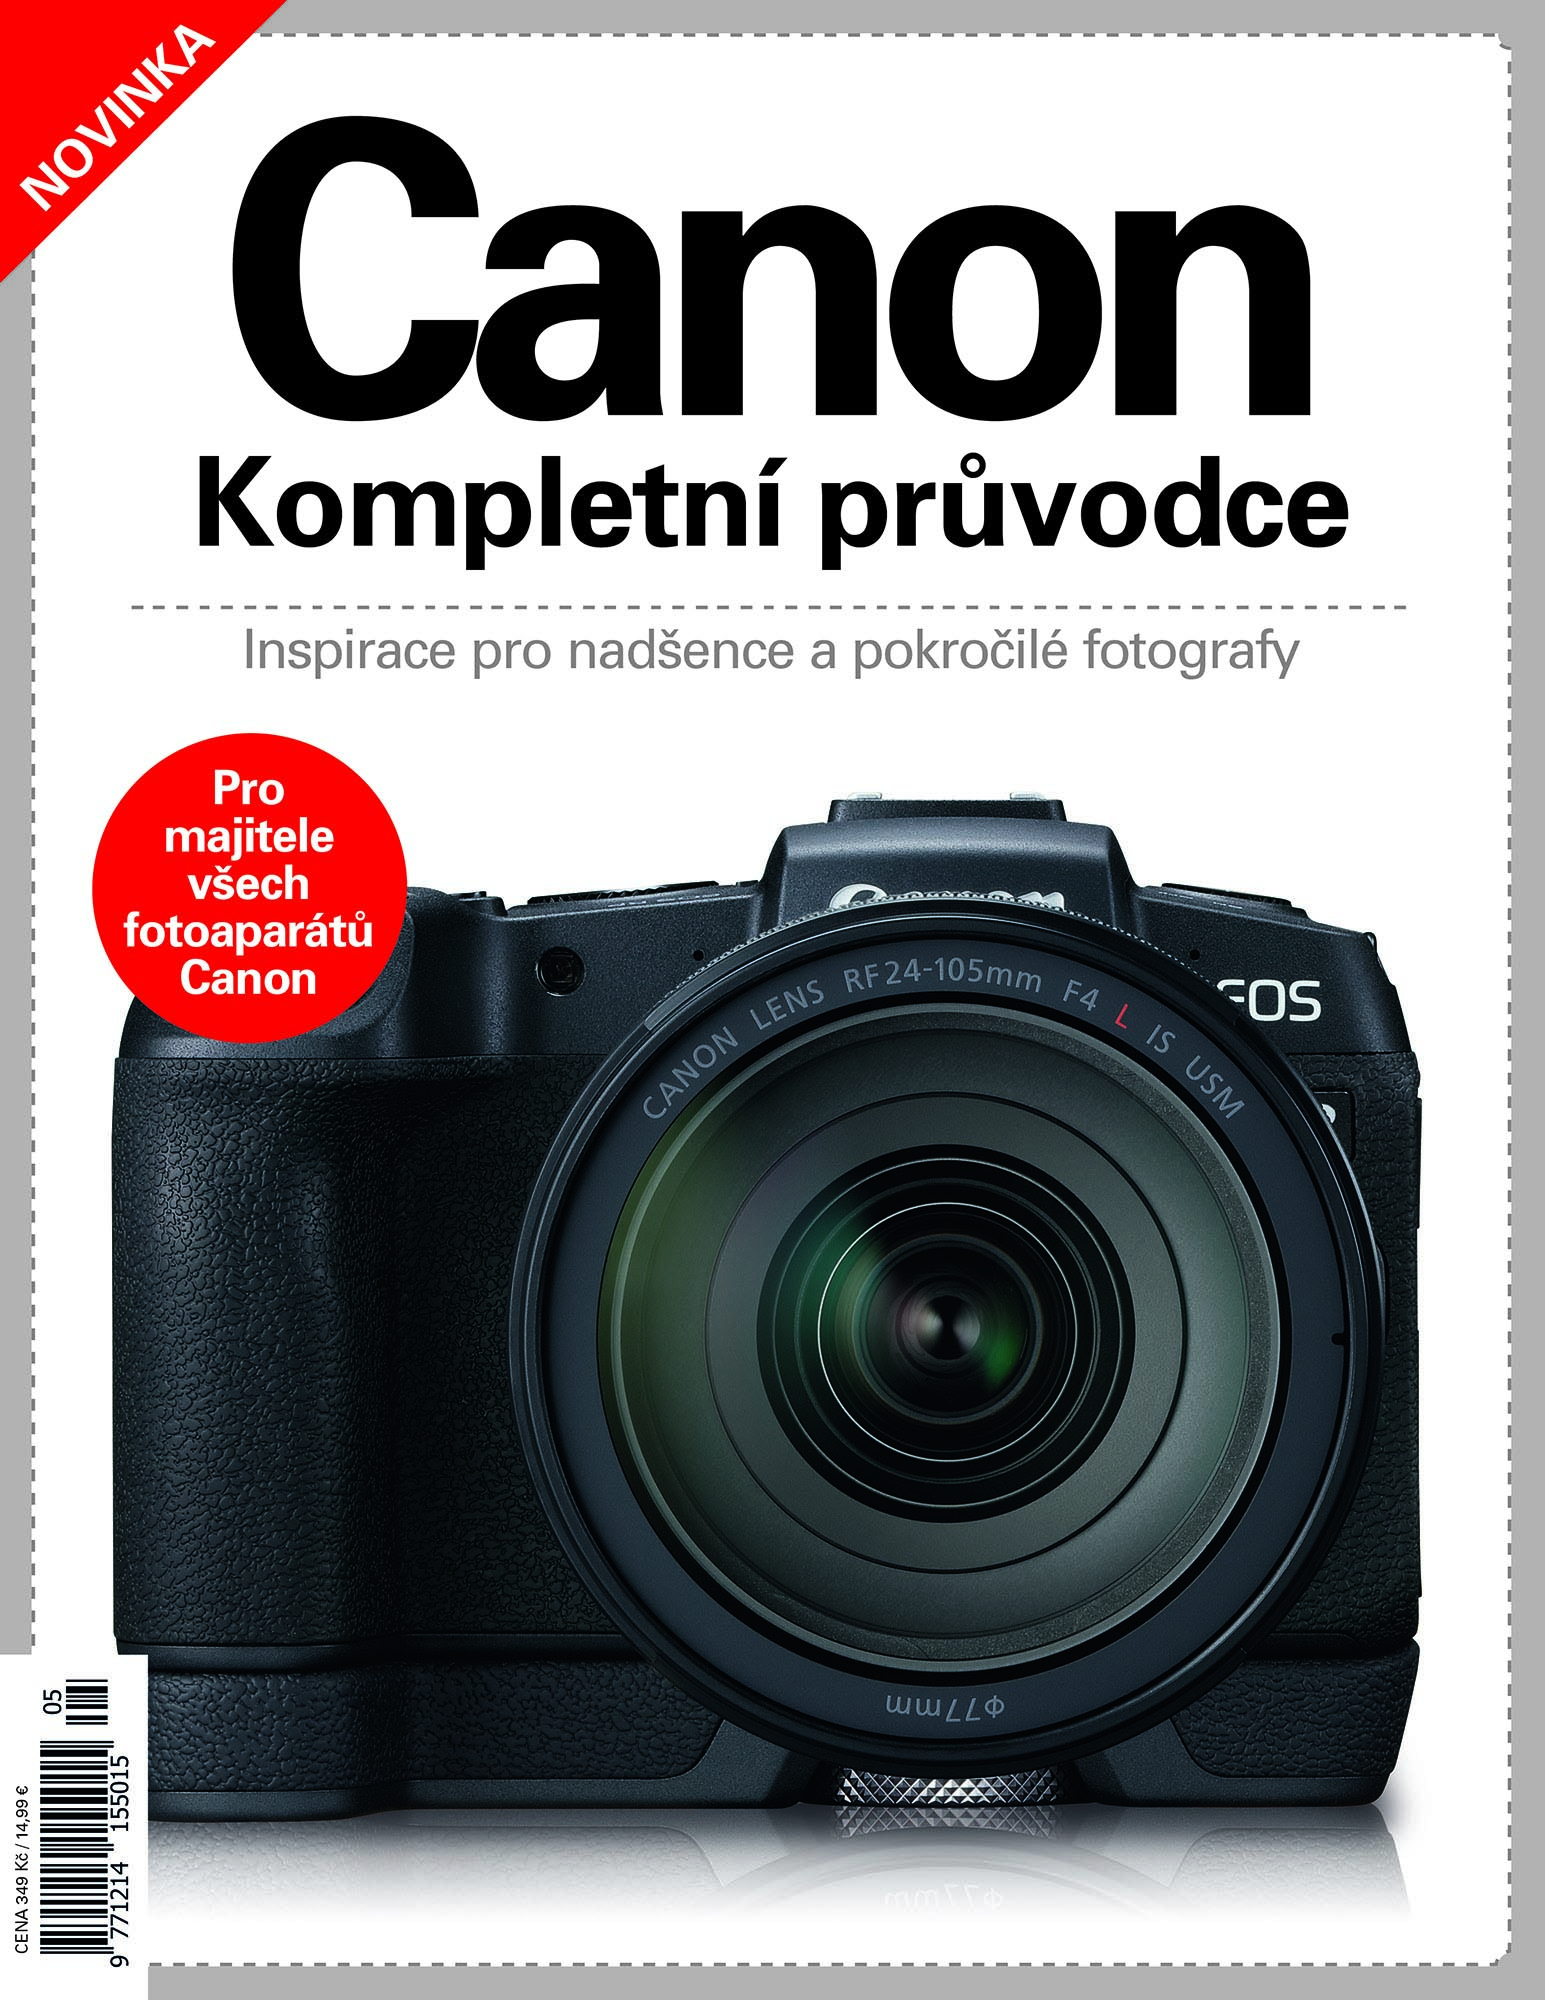 Canon - Kompletní průvodce - Inspirace pro nadšence a pokročilé fotografy